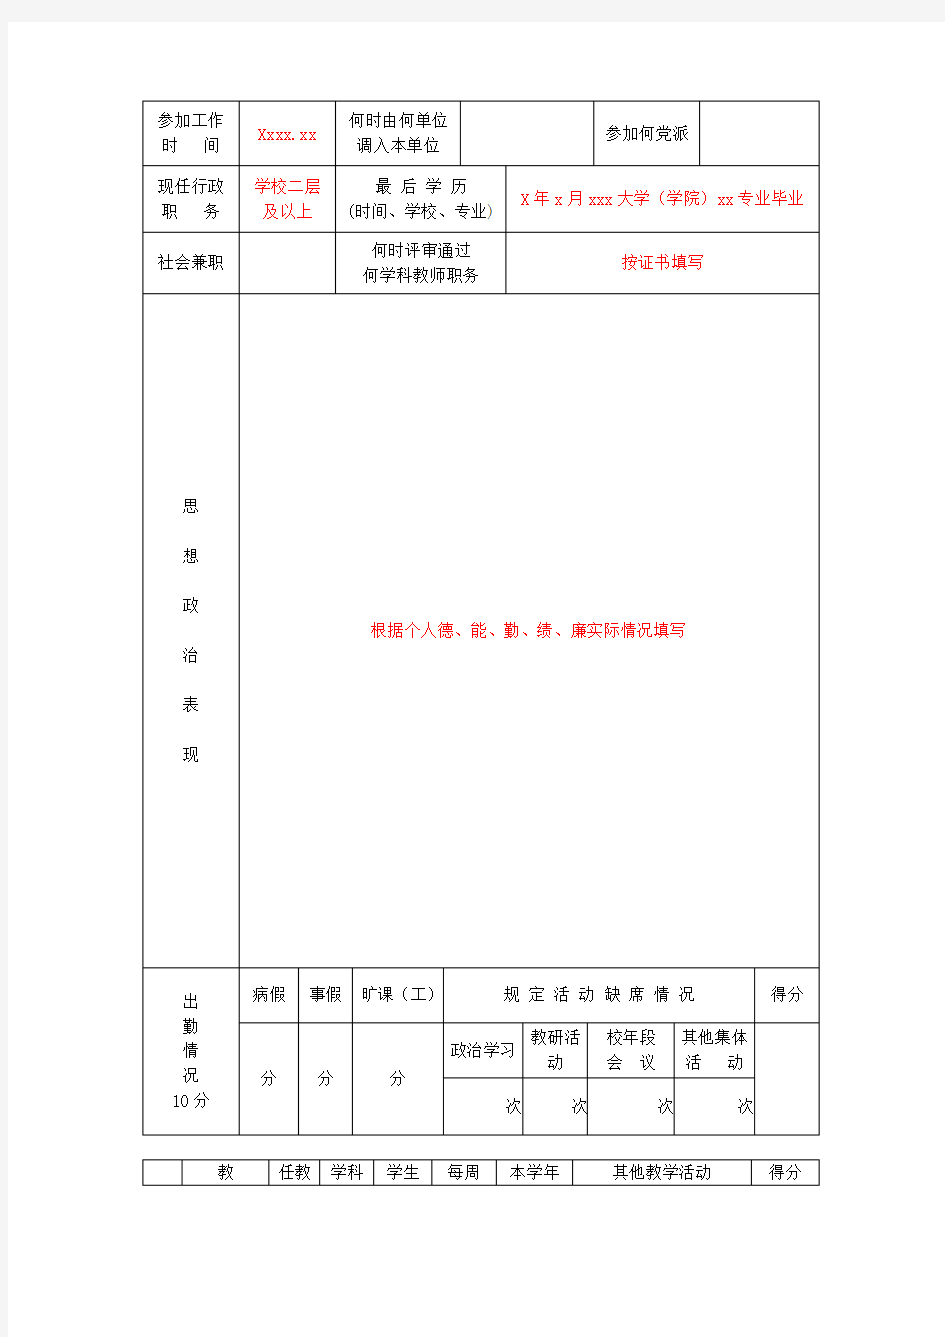 福建省中小学教师职务考评登记表(样表)